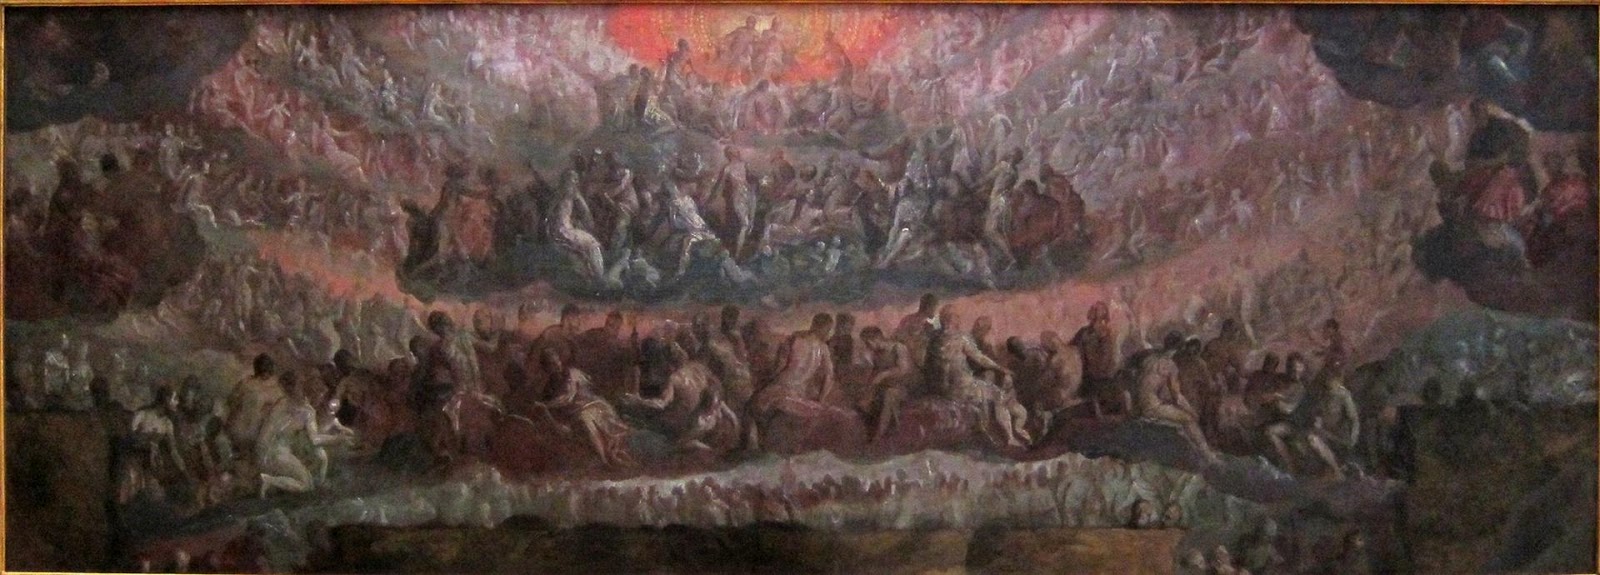 Paolo+Veronese-1528-1588 (185).jpg